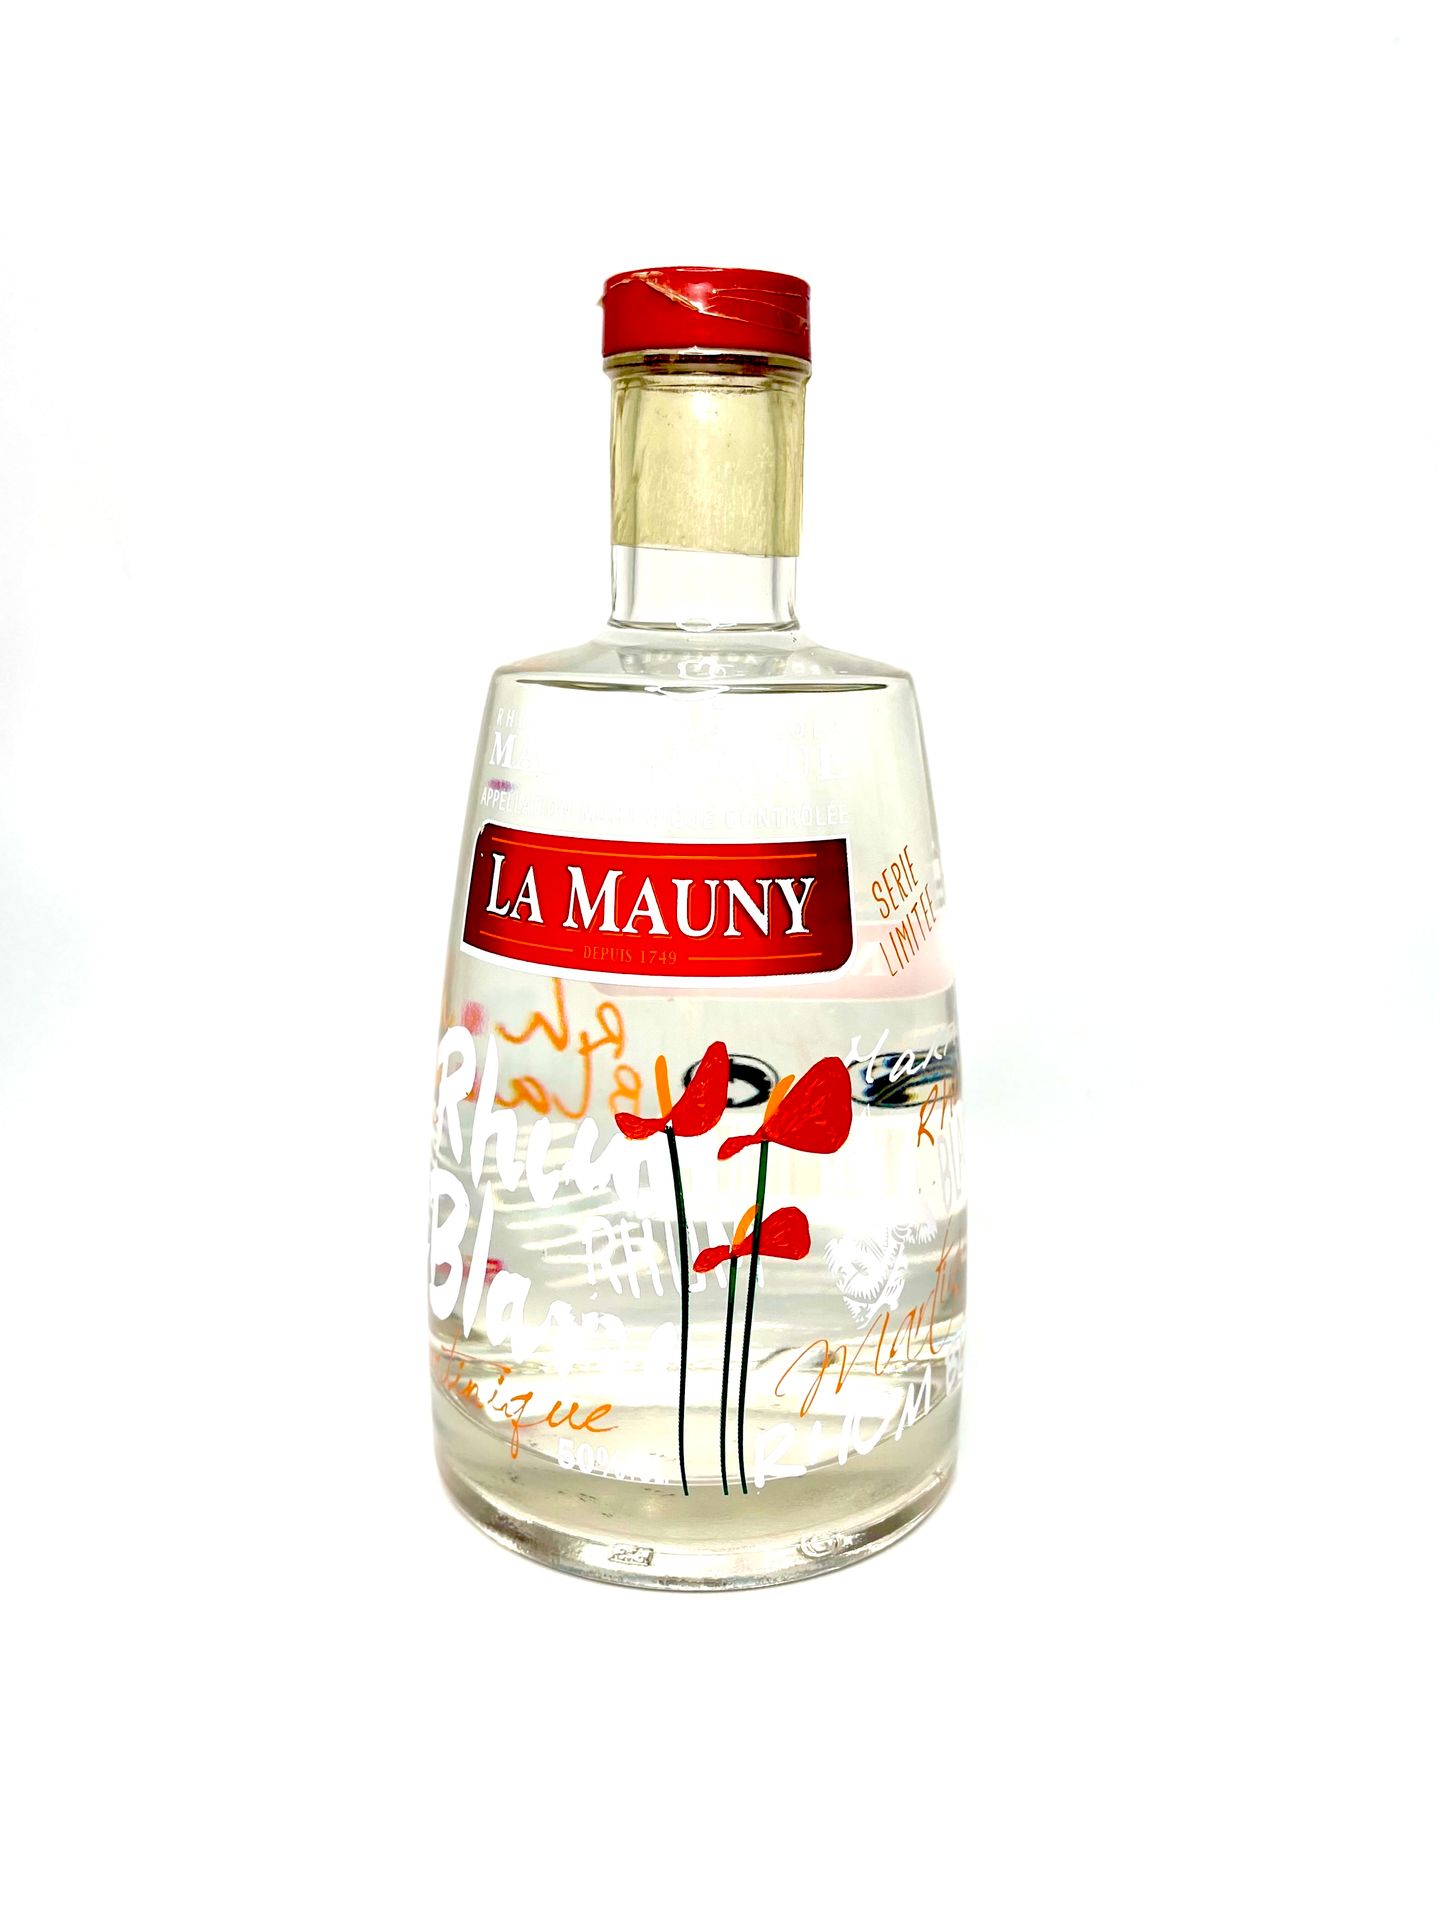 Null LA MAUNY

Rum agricolo bianco 50°, Martinique AOC.

Serie limitata Fiore.

&hellip;